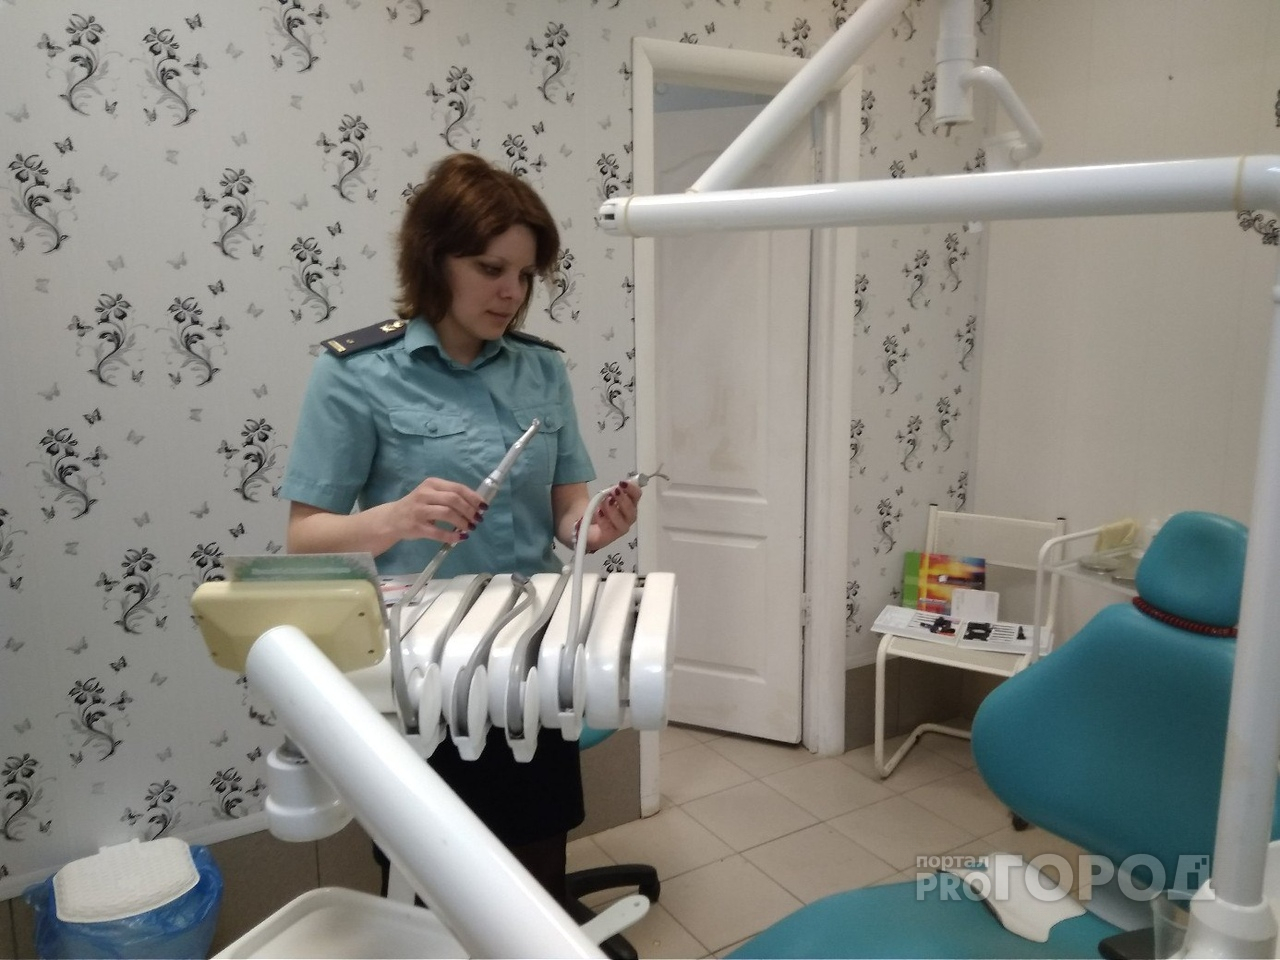 Пациент, пришедший на прием, заставил стоматолога работать бесплатно в Ярославле